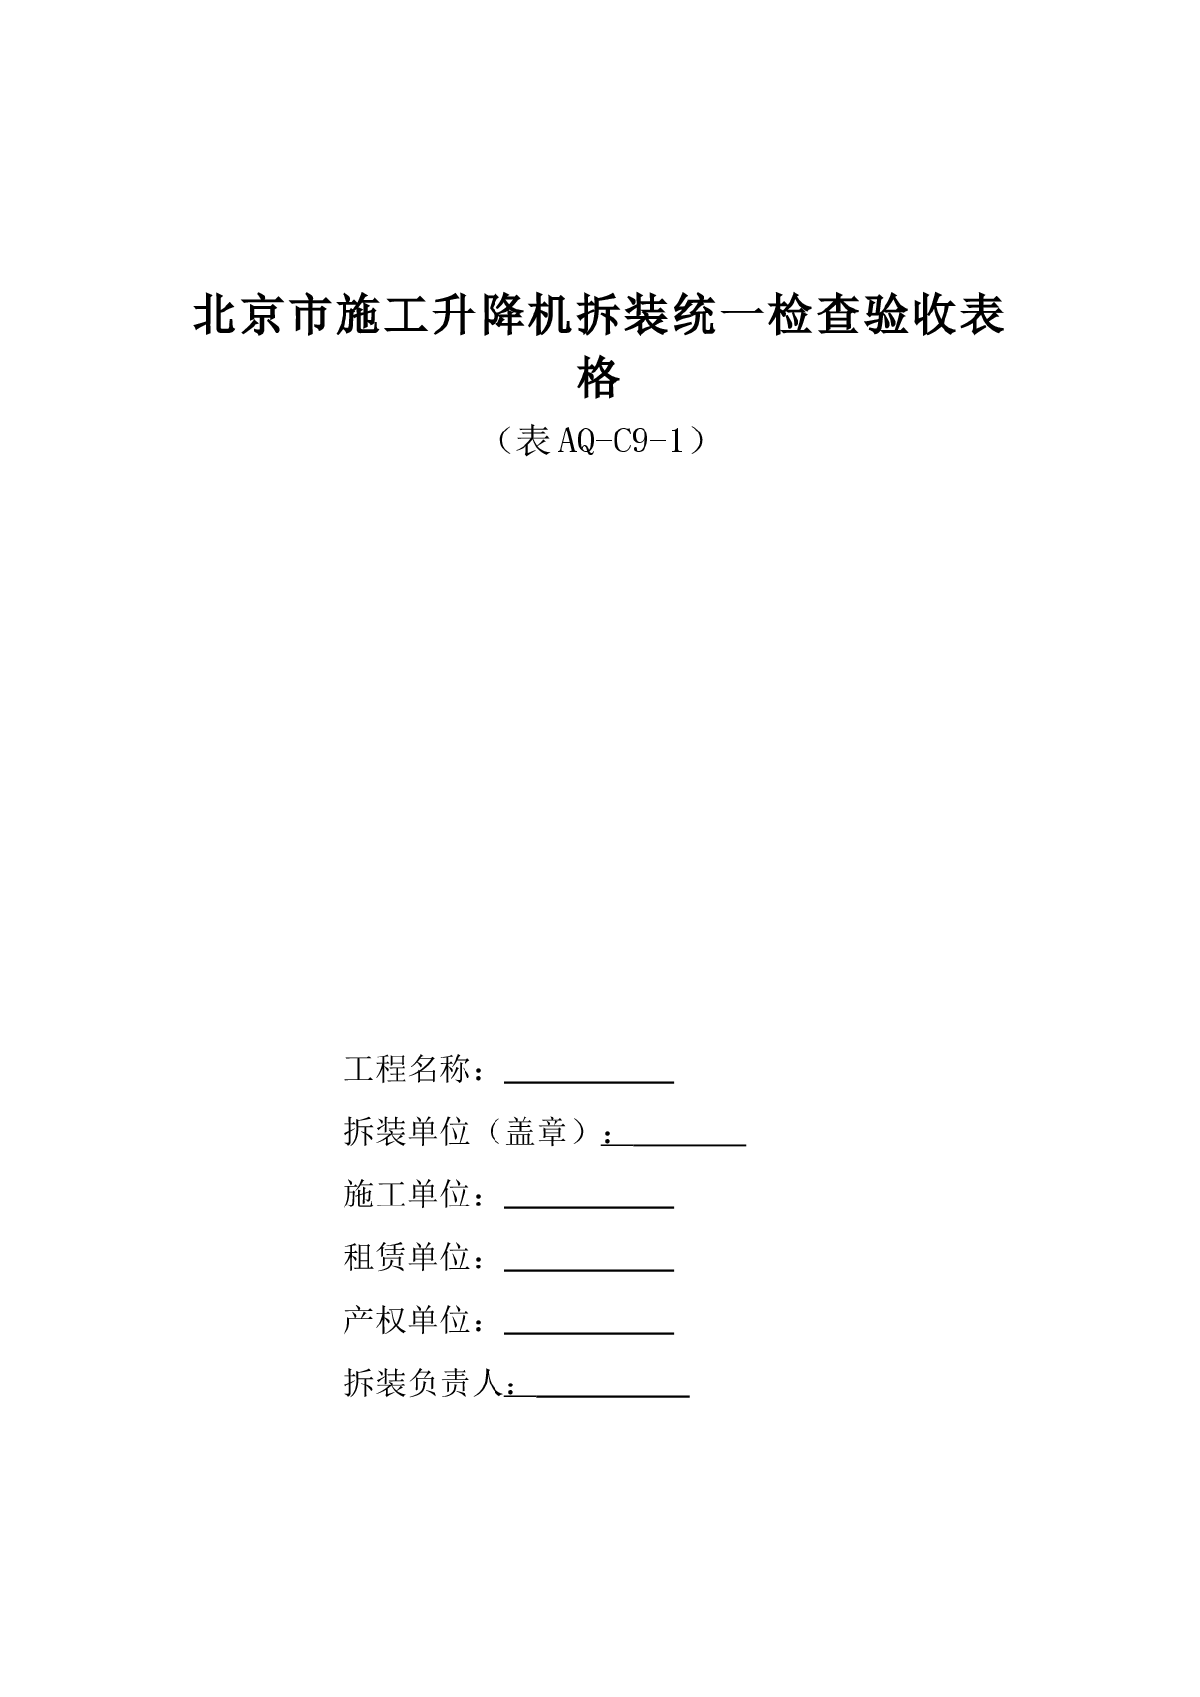 北京市施工升降机拆装统一检查验收表格（表AQ-C9-1）